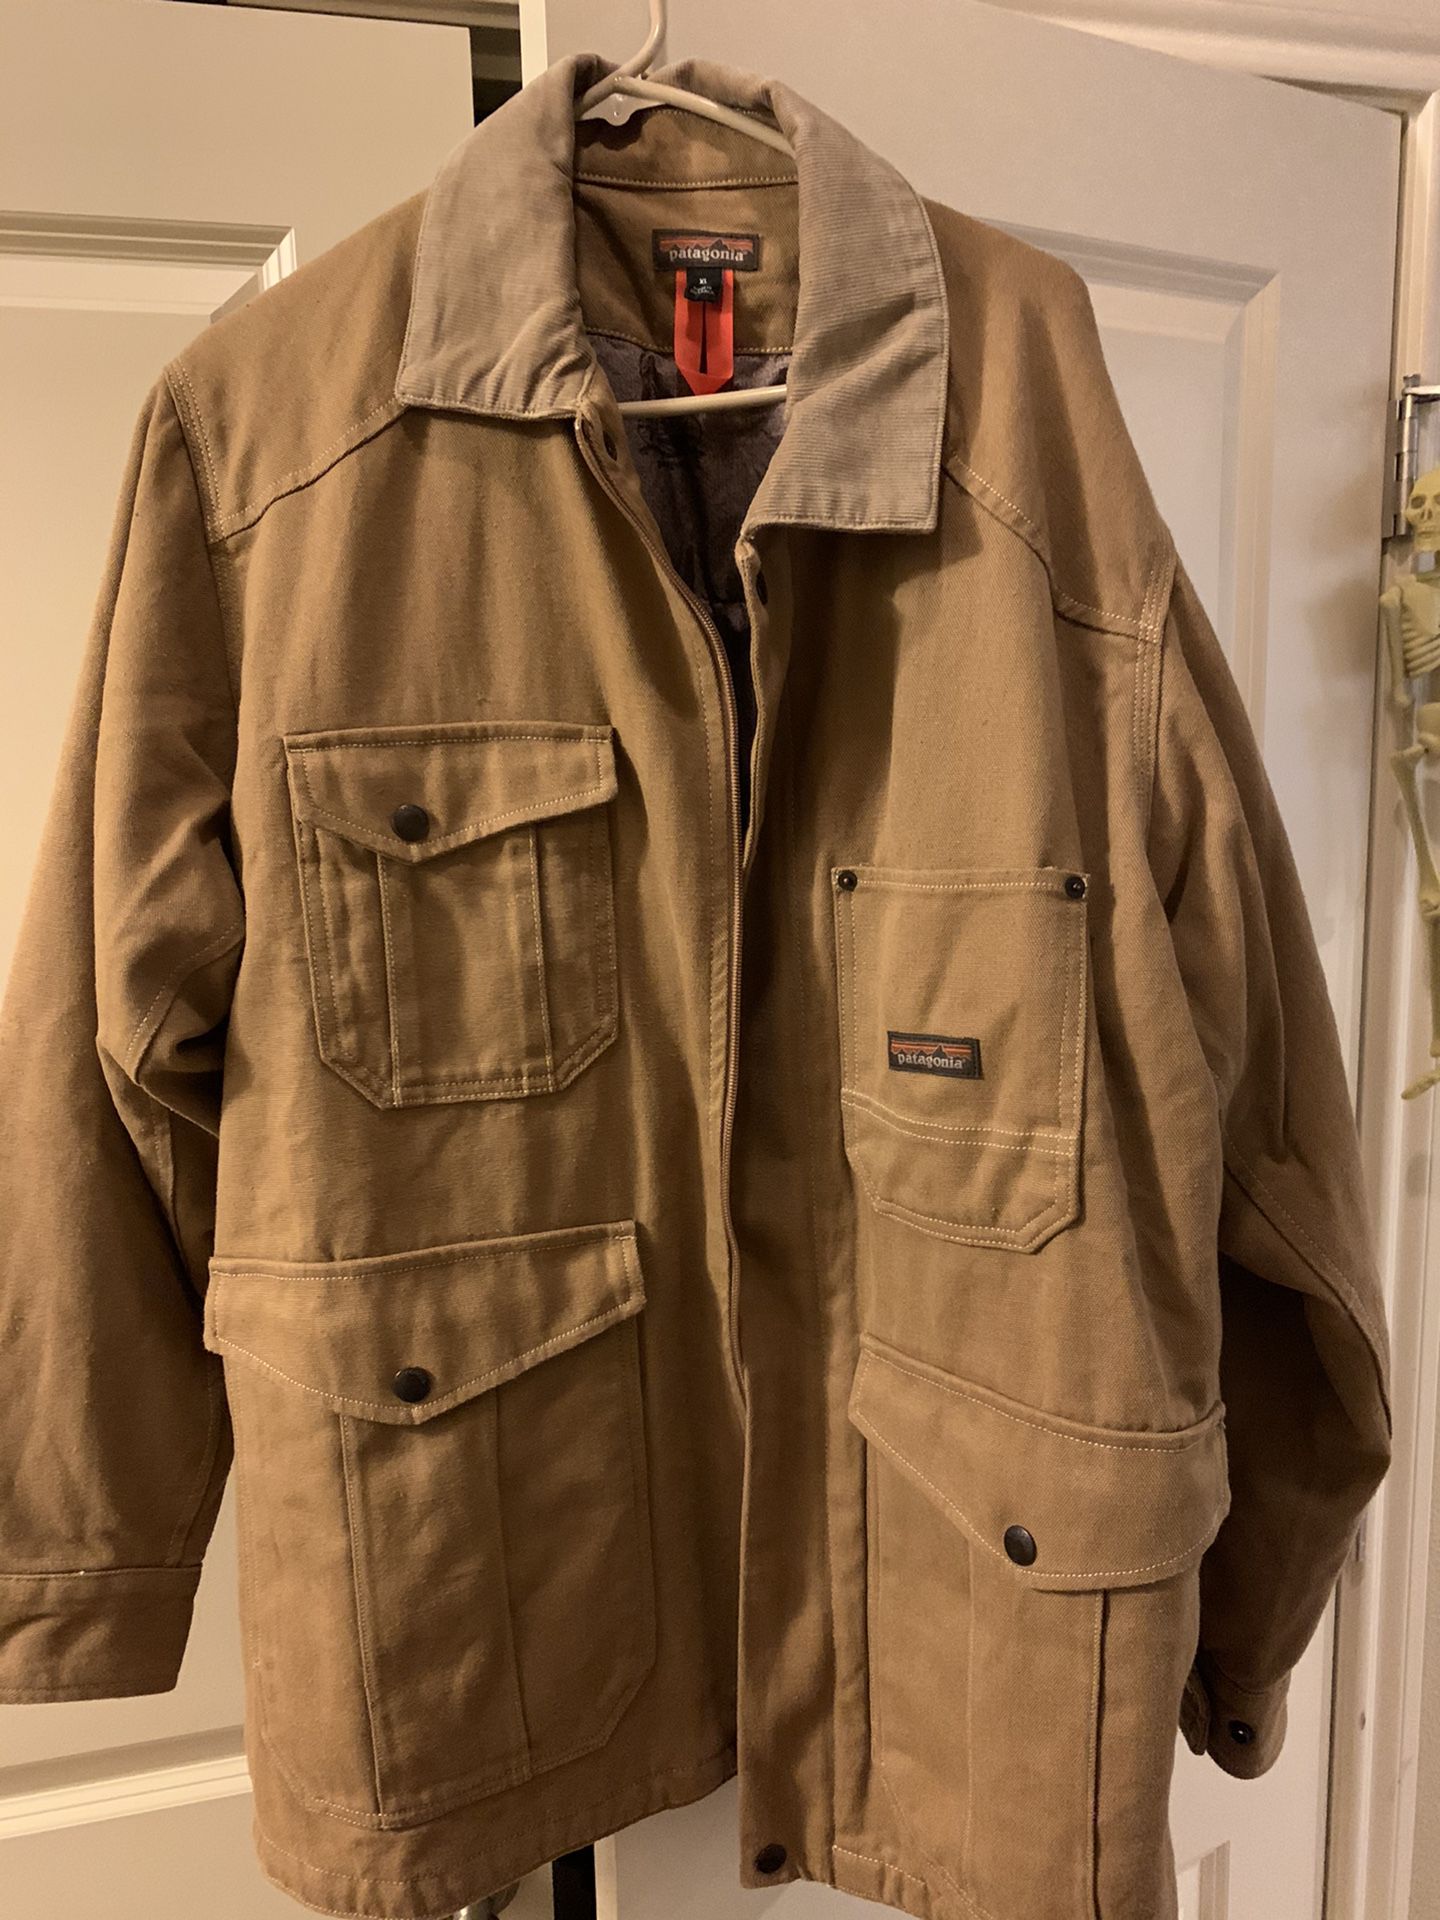 Patagonia Worn Wear Men’s Jacket-Brown-Size XL